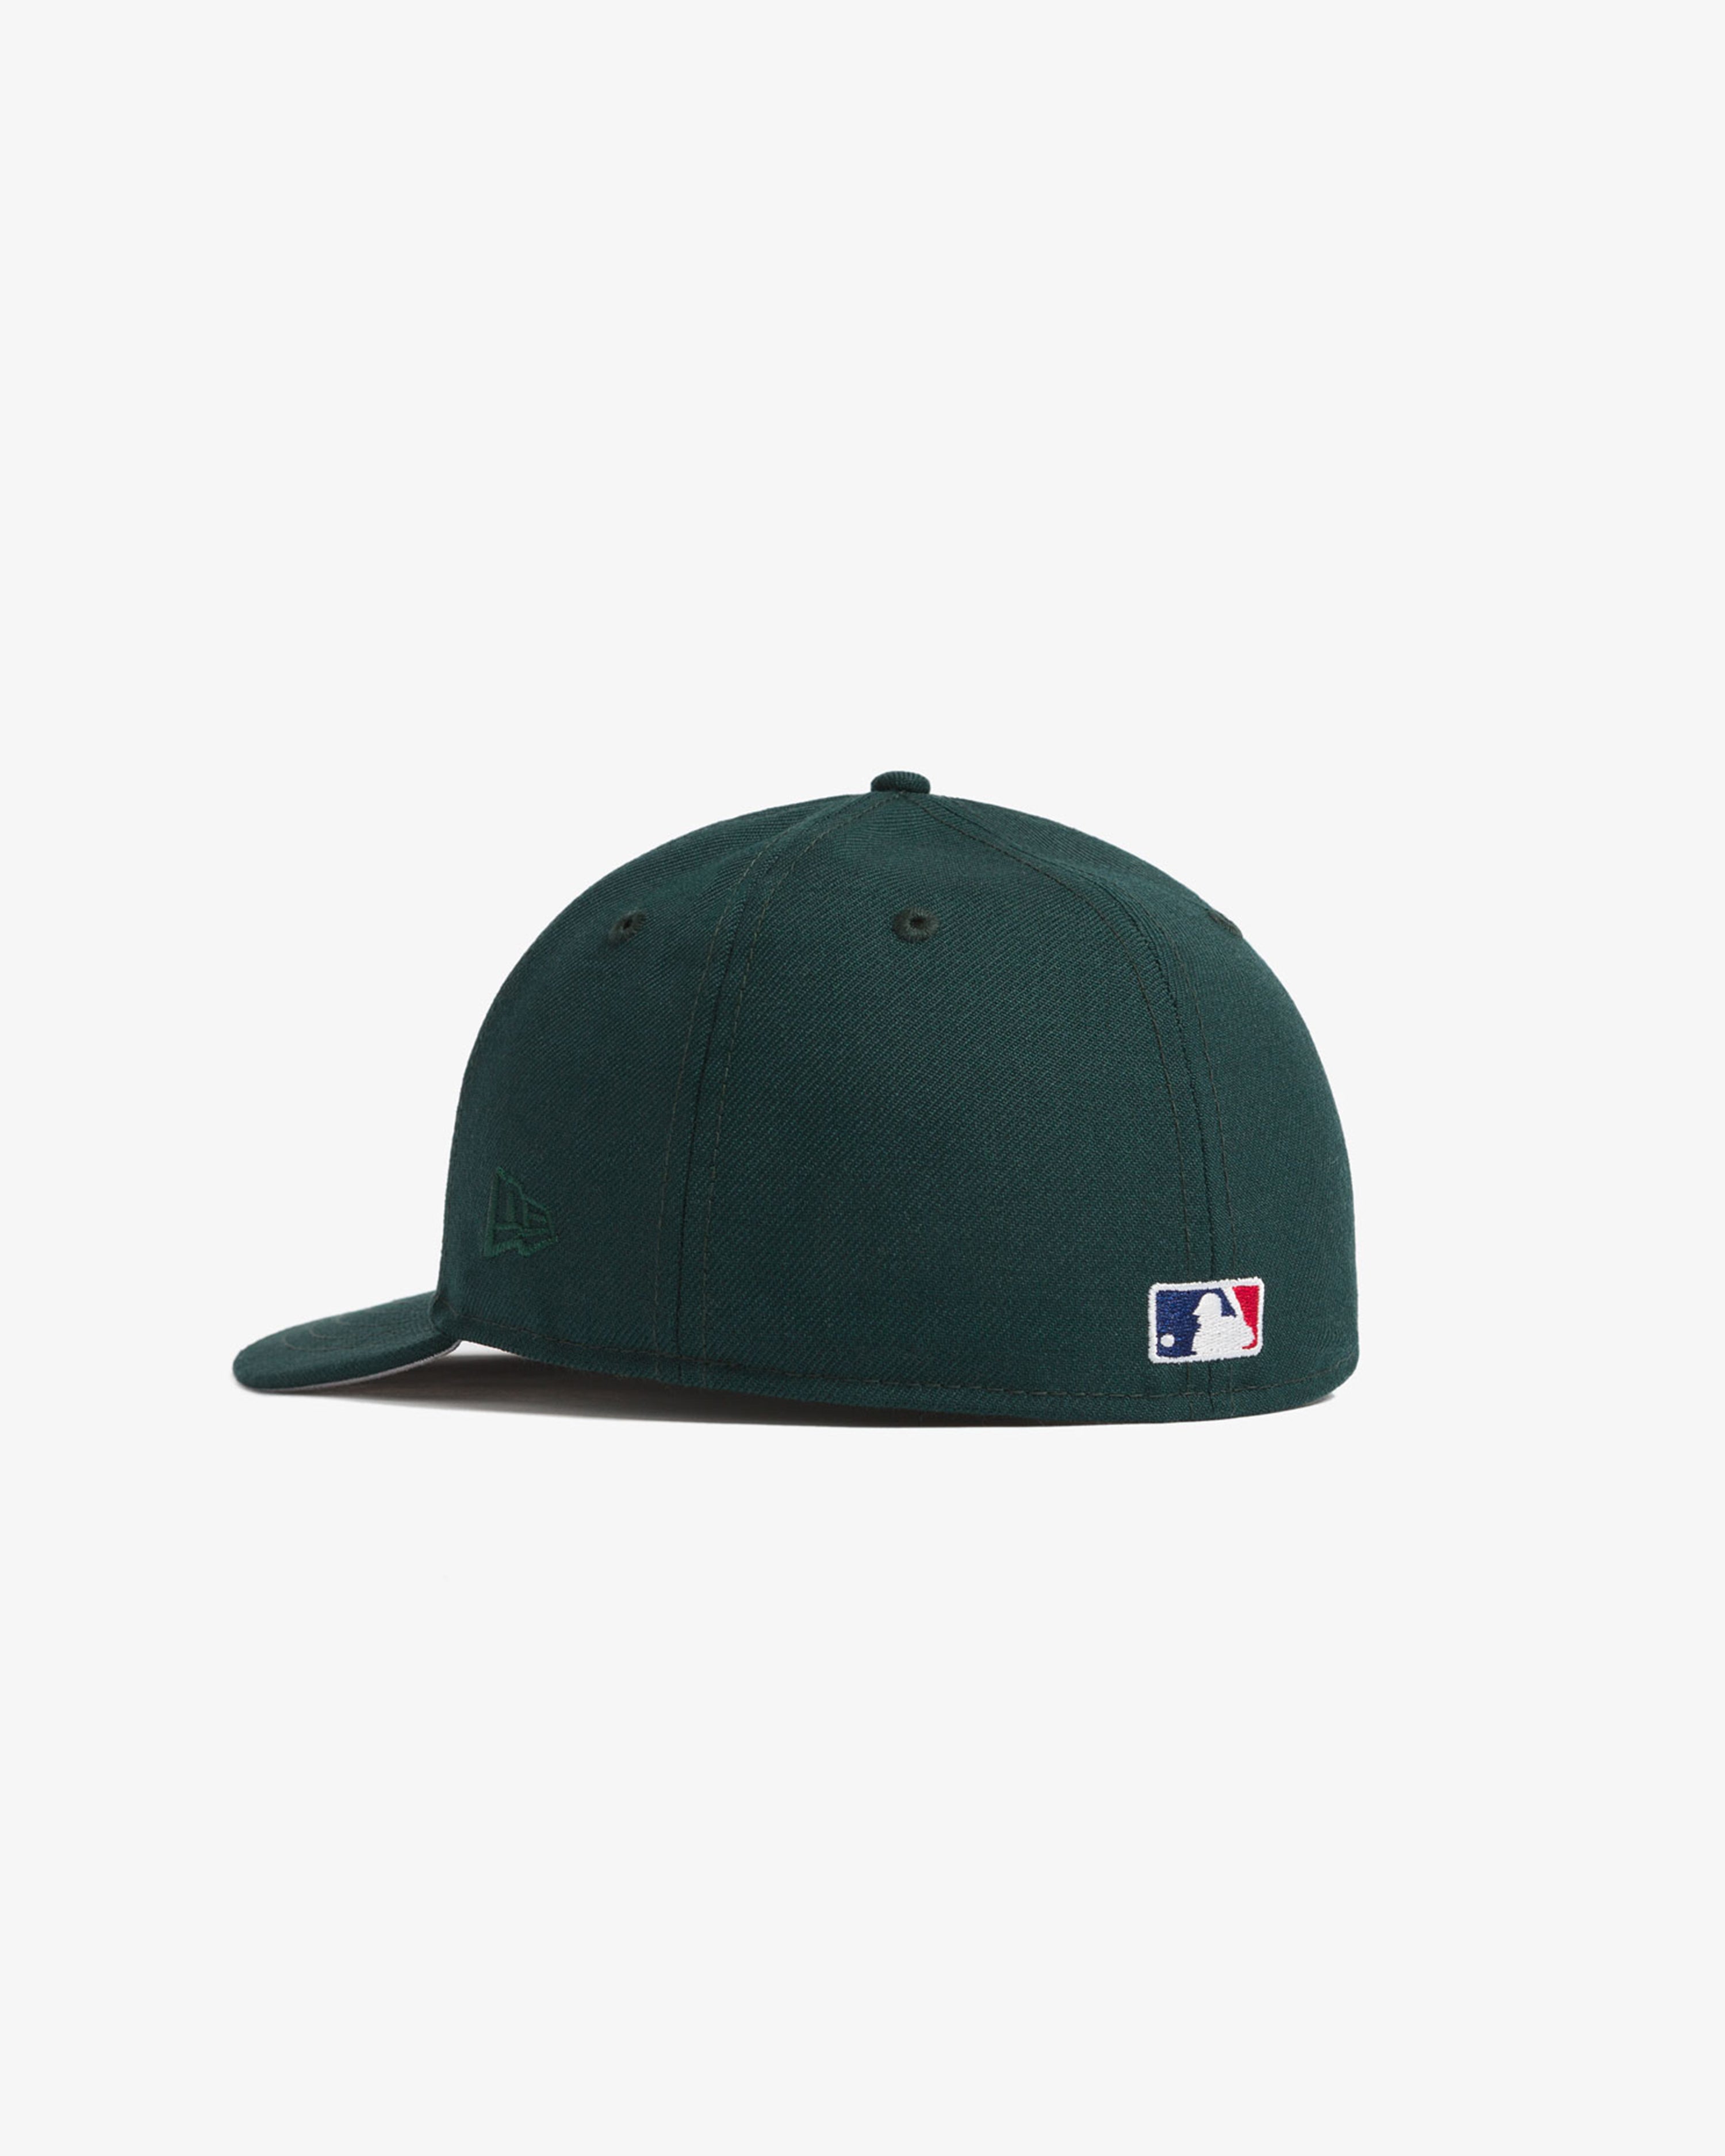 new era baseball fitted hats